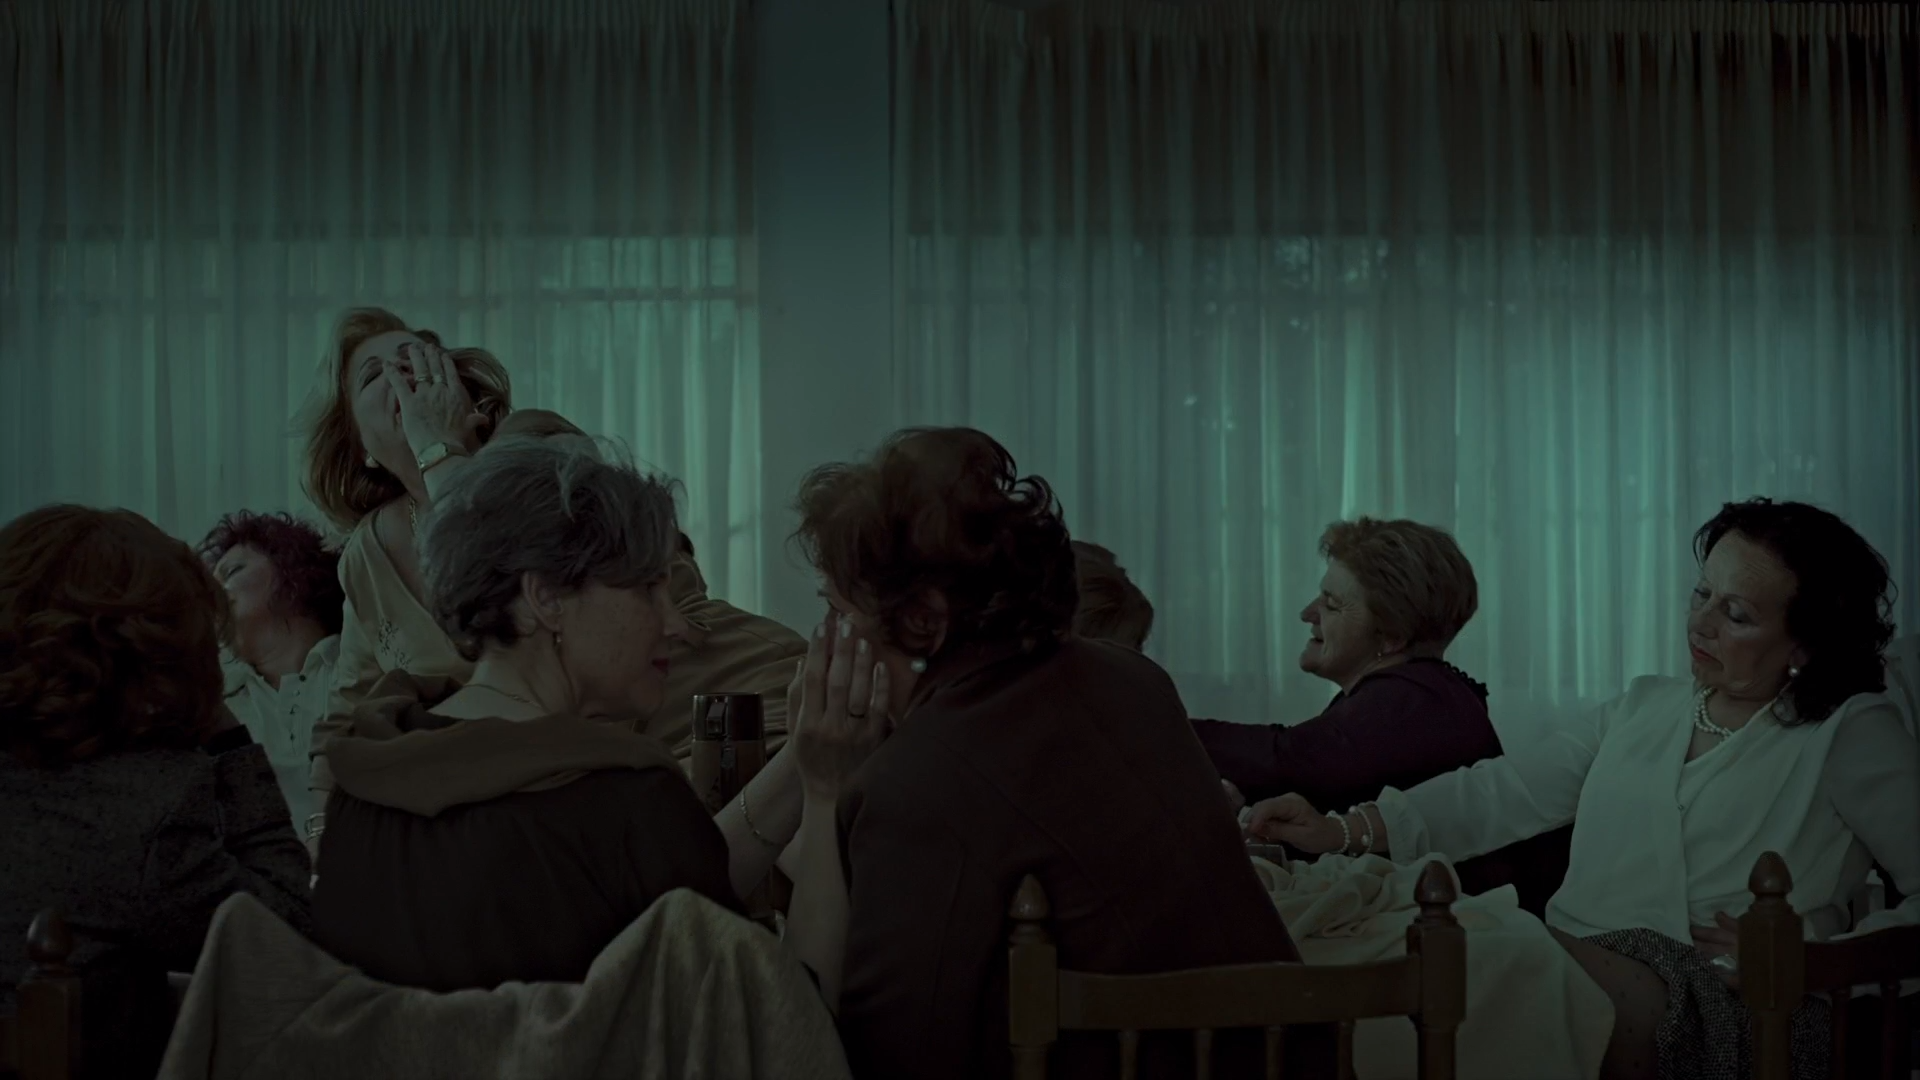 Cena do filme Um Forte Clarão exibe várias mulheres brancas idosas ao redor de uma mesa. Elas parecem estar sob efeito de alguma droga. Algumas mulheres tocam no rosto das outras e, em cima da mesa, uma mulher está deitada com a mão no rosto. Parece extasiada. 